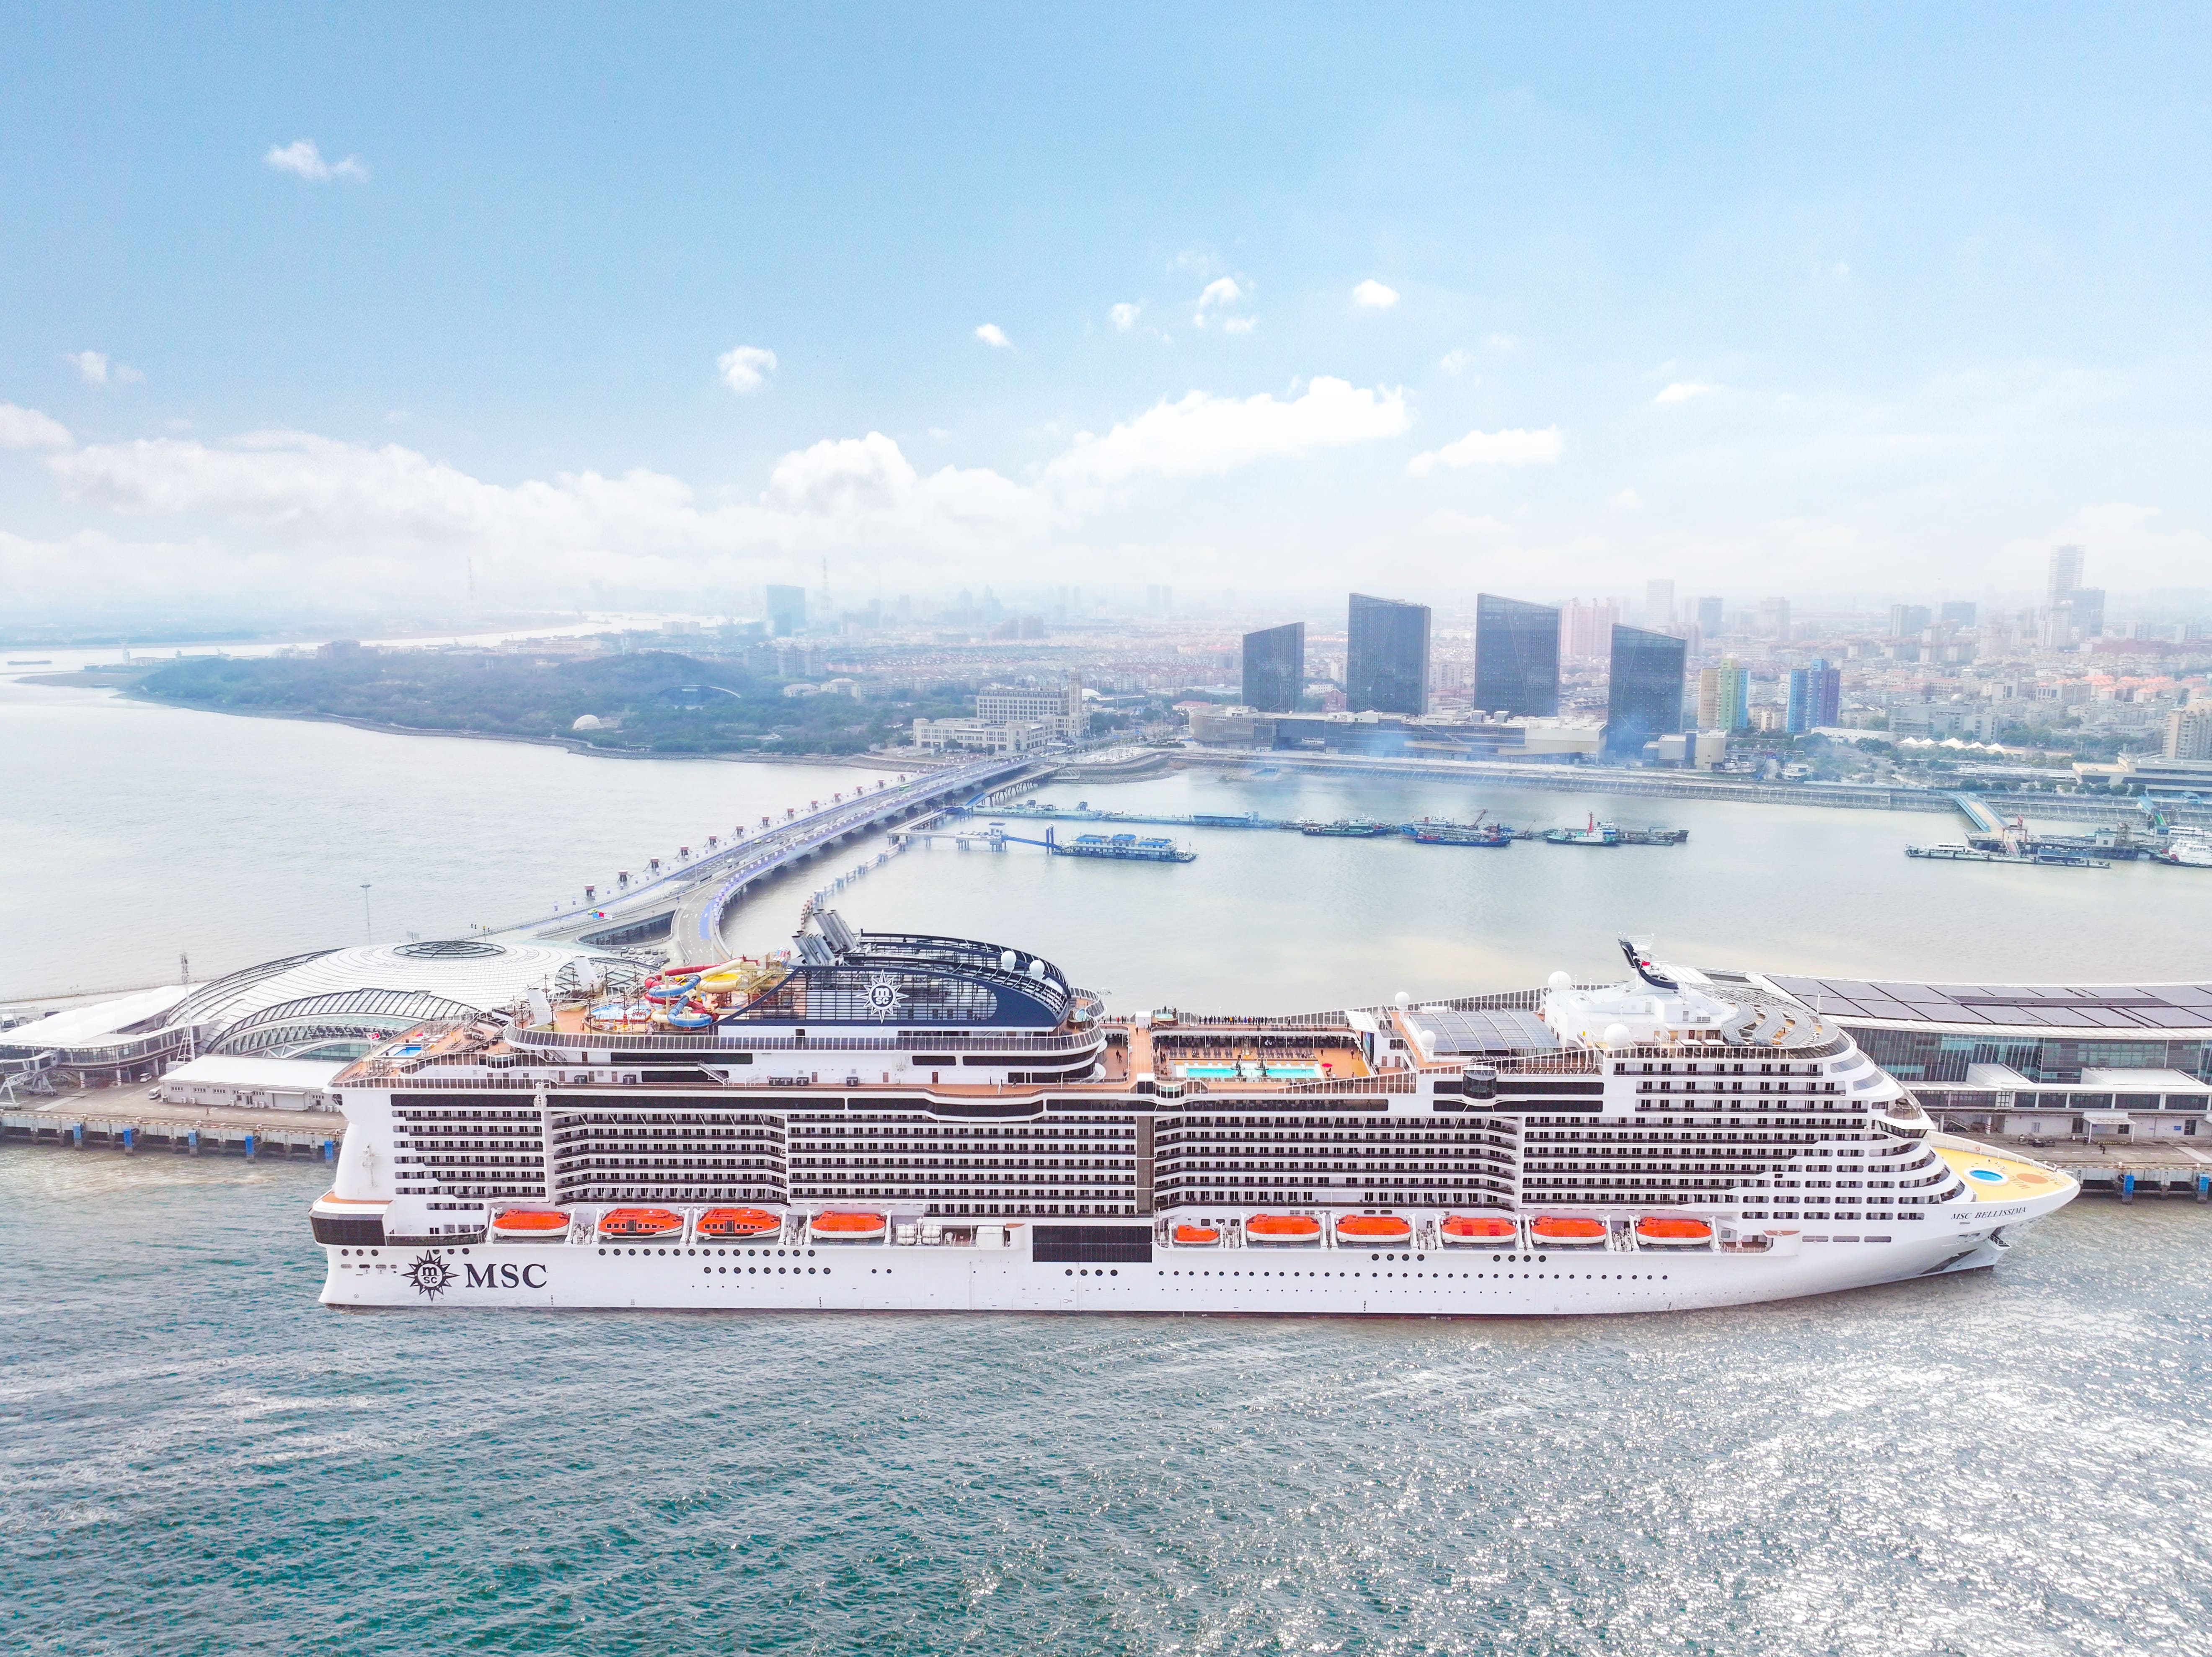 胡润百富- 资讯- MSC地中海邮轮宣布“双船四母港”升级部署计划“亚洲旗舰